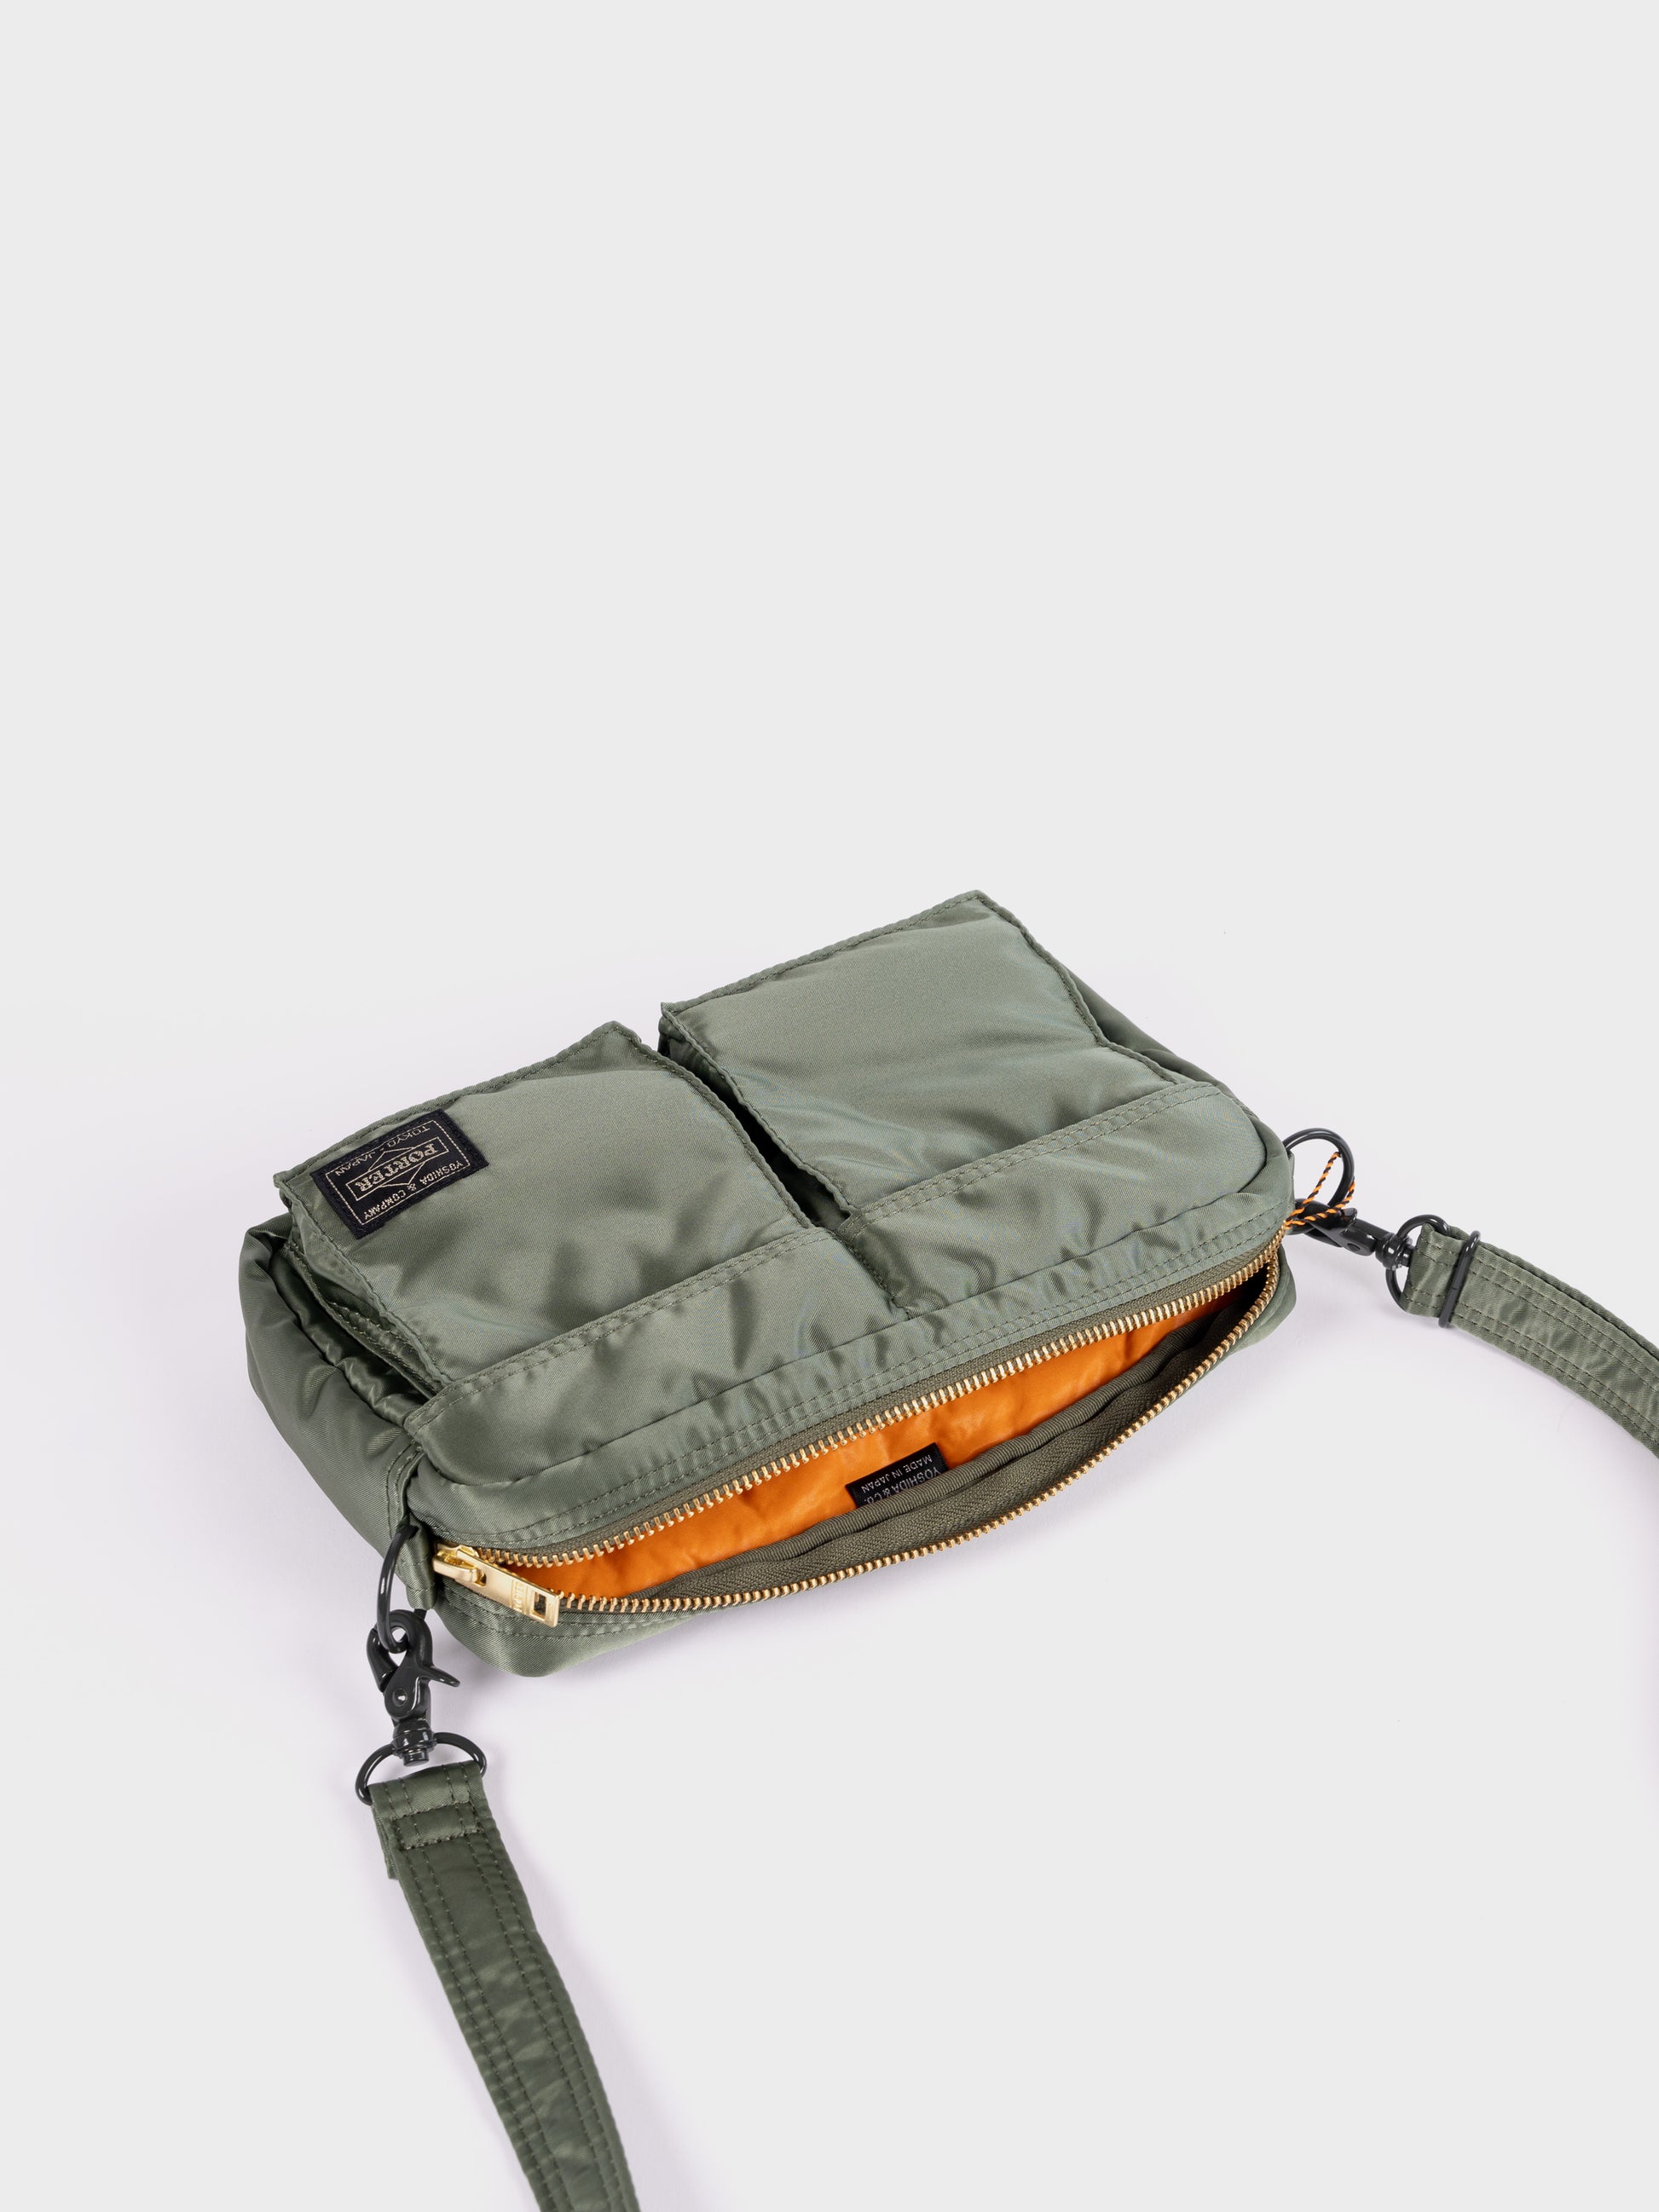 Porter-Yoshida & Co Tanker Shoulder Bag - Sage Green